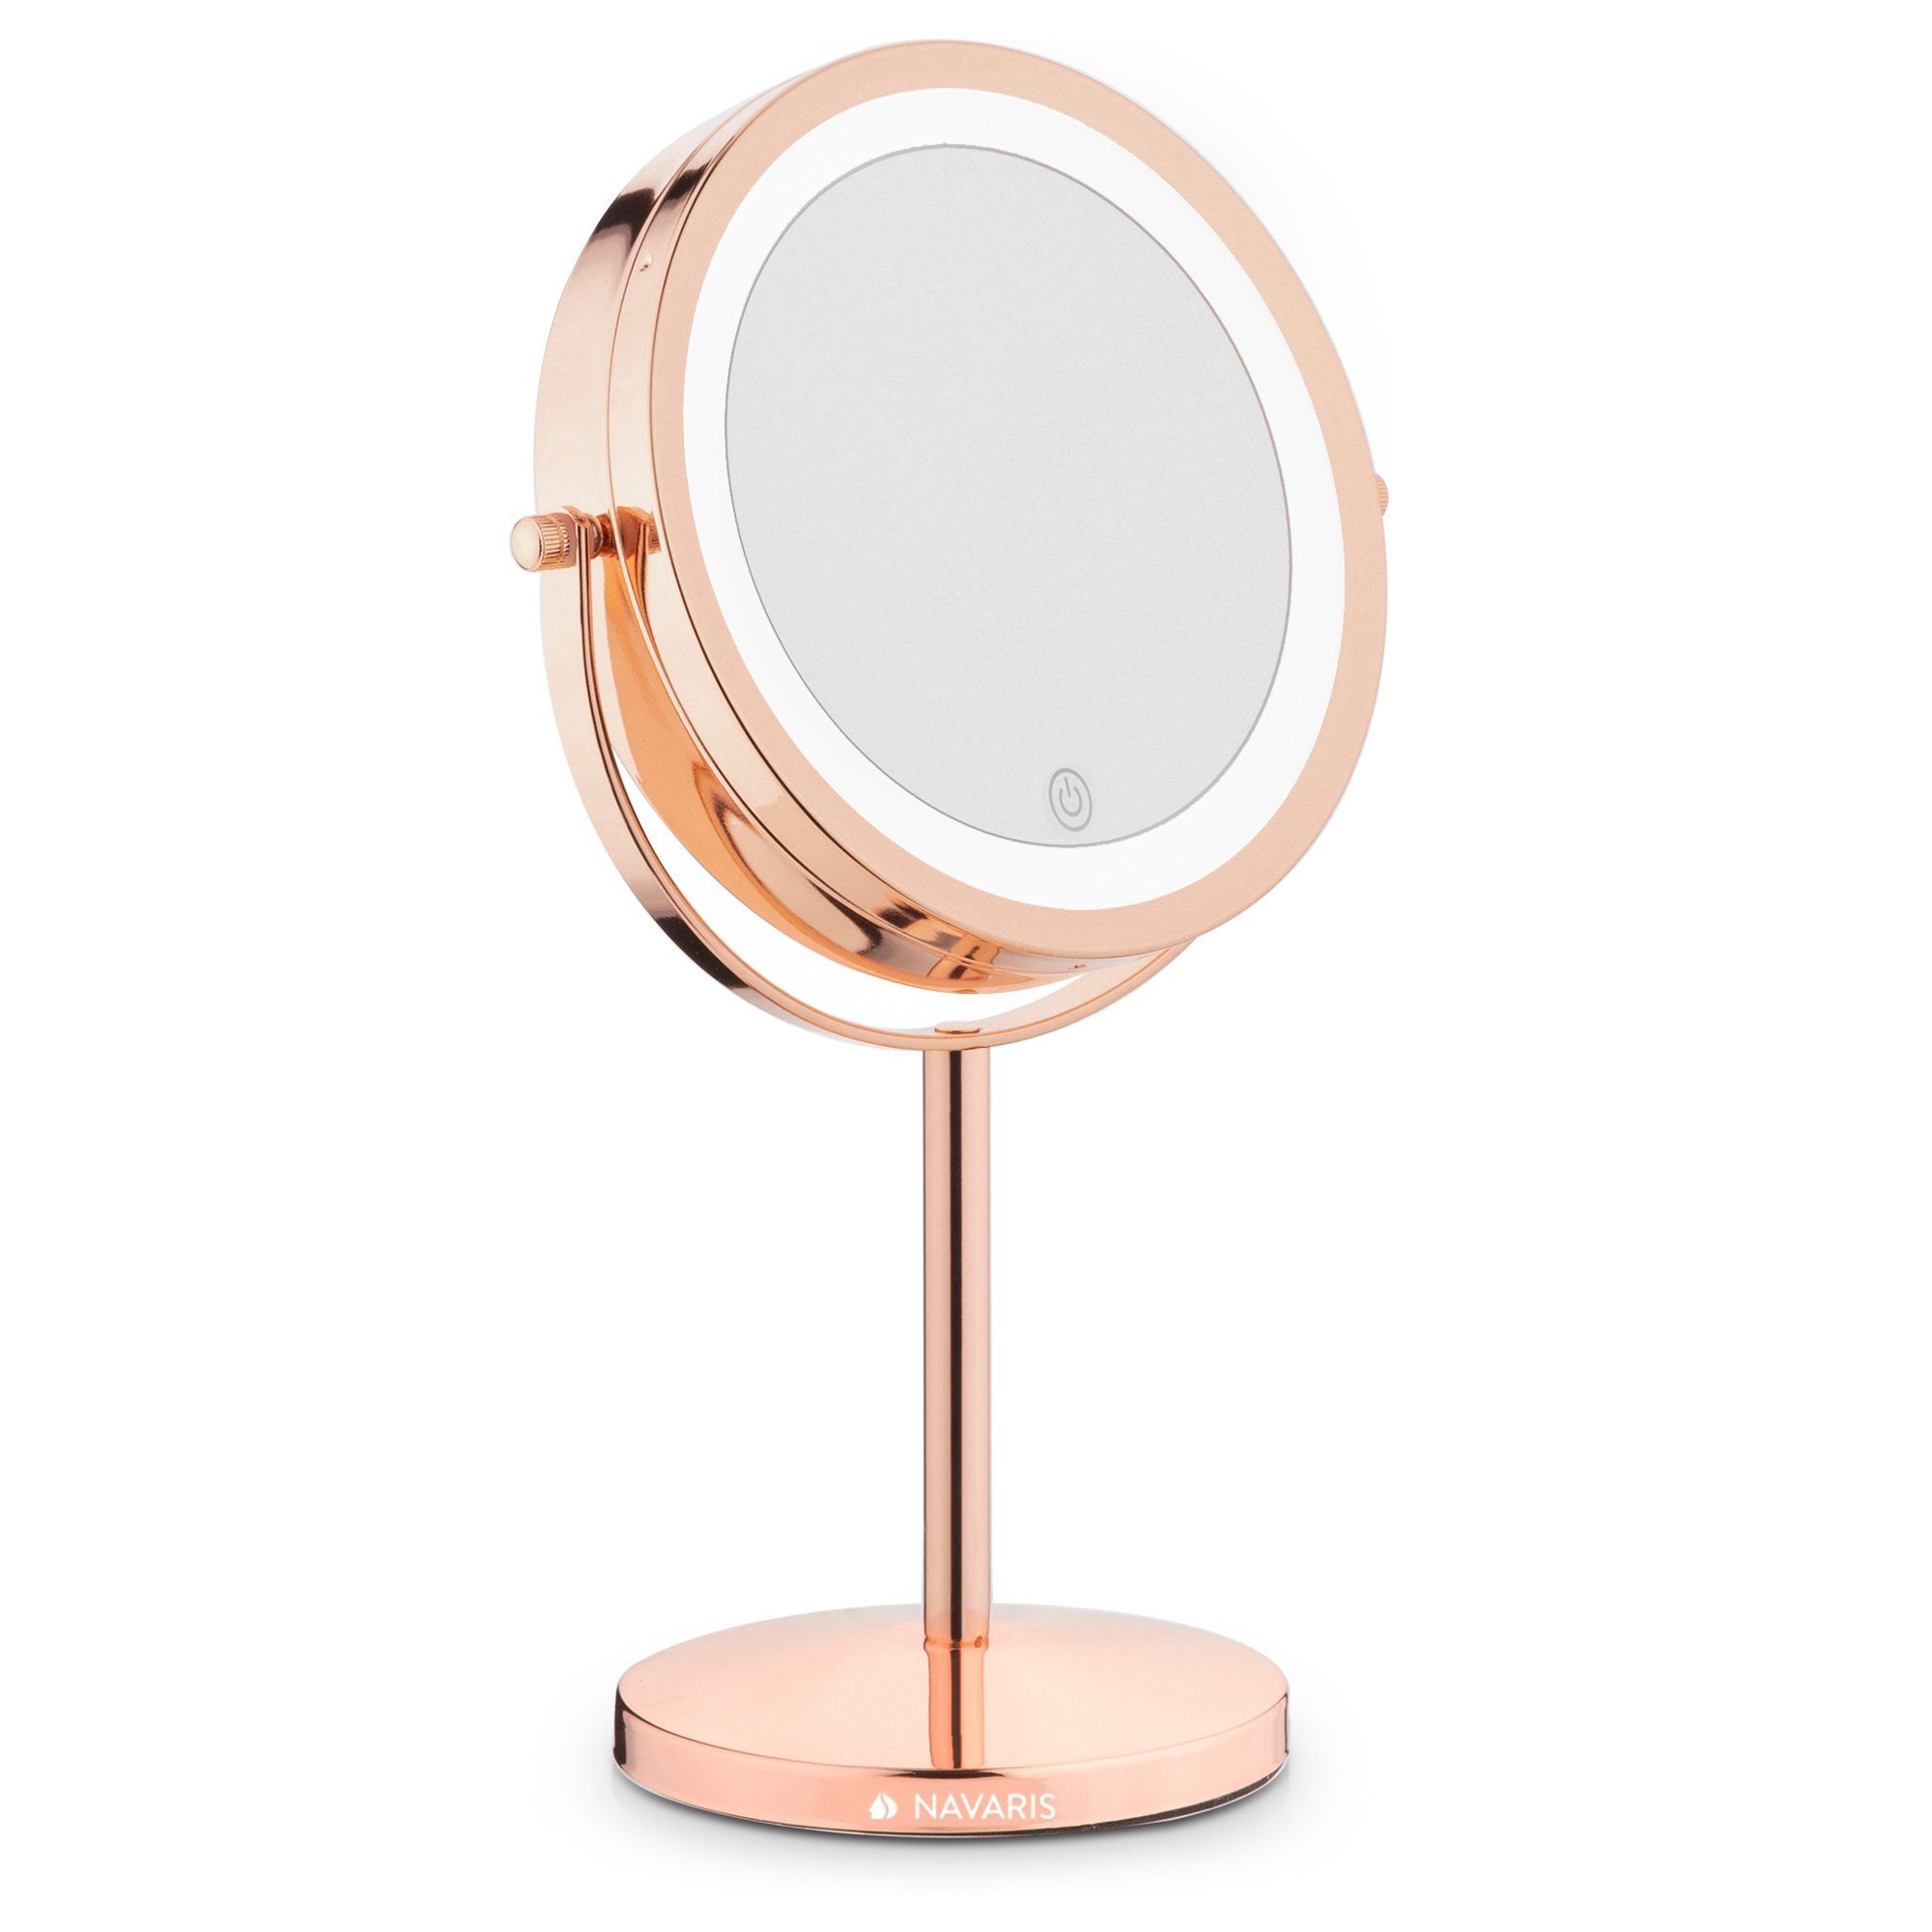 Navaris LED-Lichtspiegel, Kosmetikspiegel mit LED Beleuchtung - Spiegel mit  5fach Vergrößerung Make Up Standspiegel - Schminkspiegel beleuchtet 360°  dimmbar online kaufen | OTTO